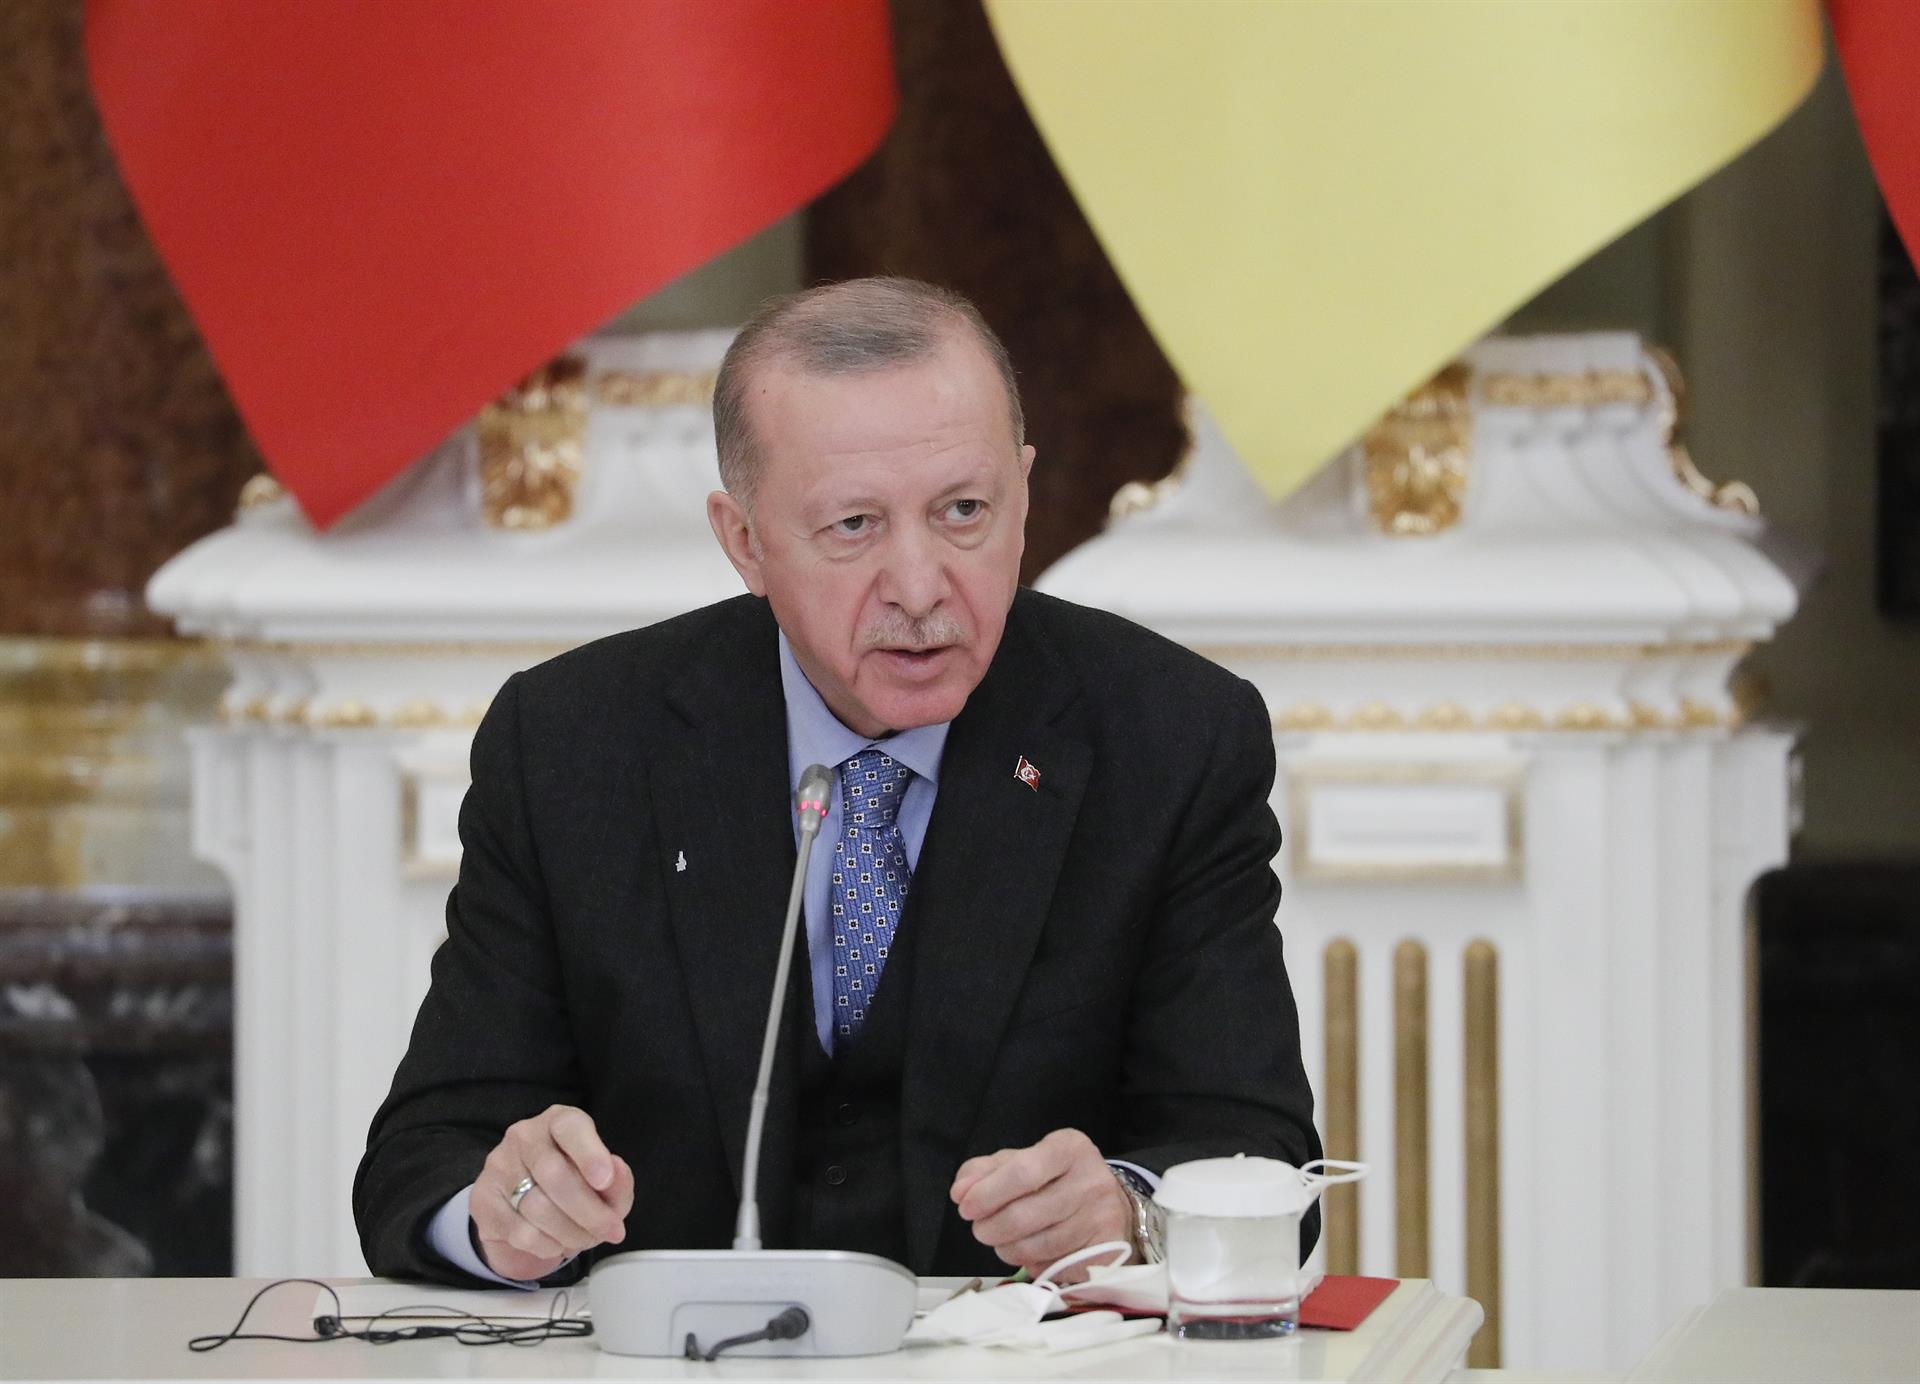 Erdogan amenaza a Grecia con una acción militar repentina